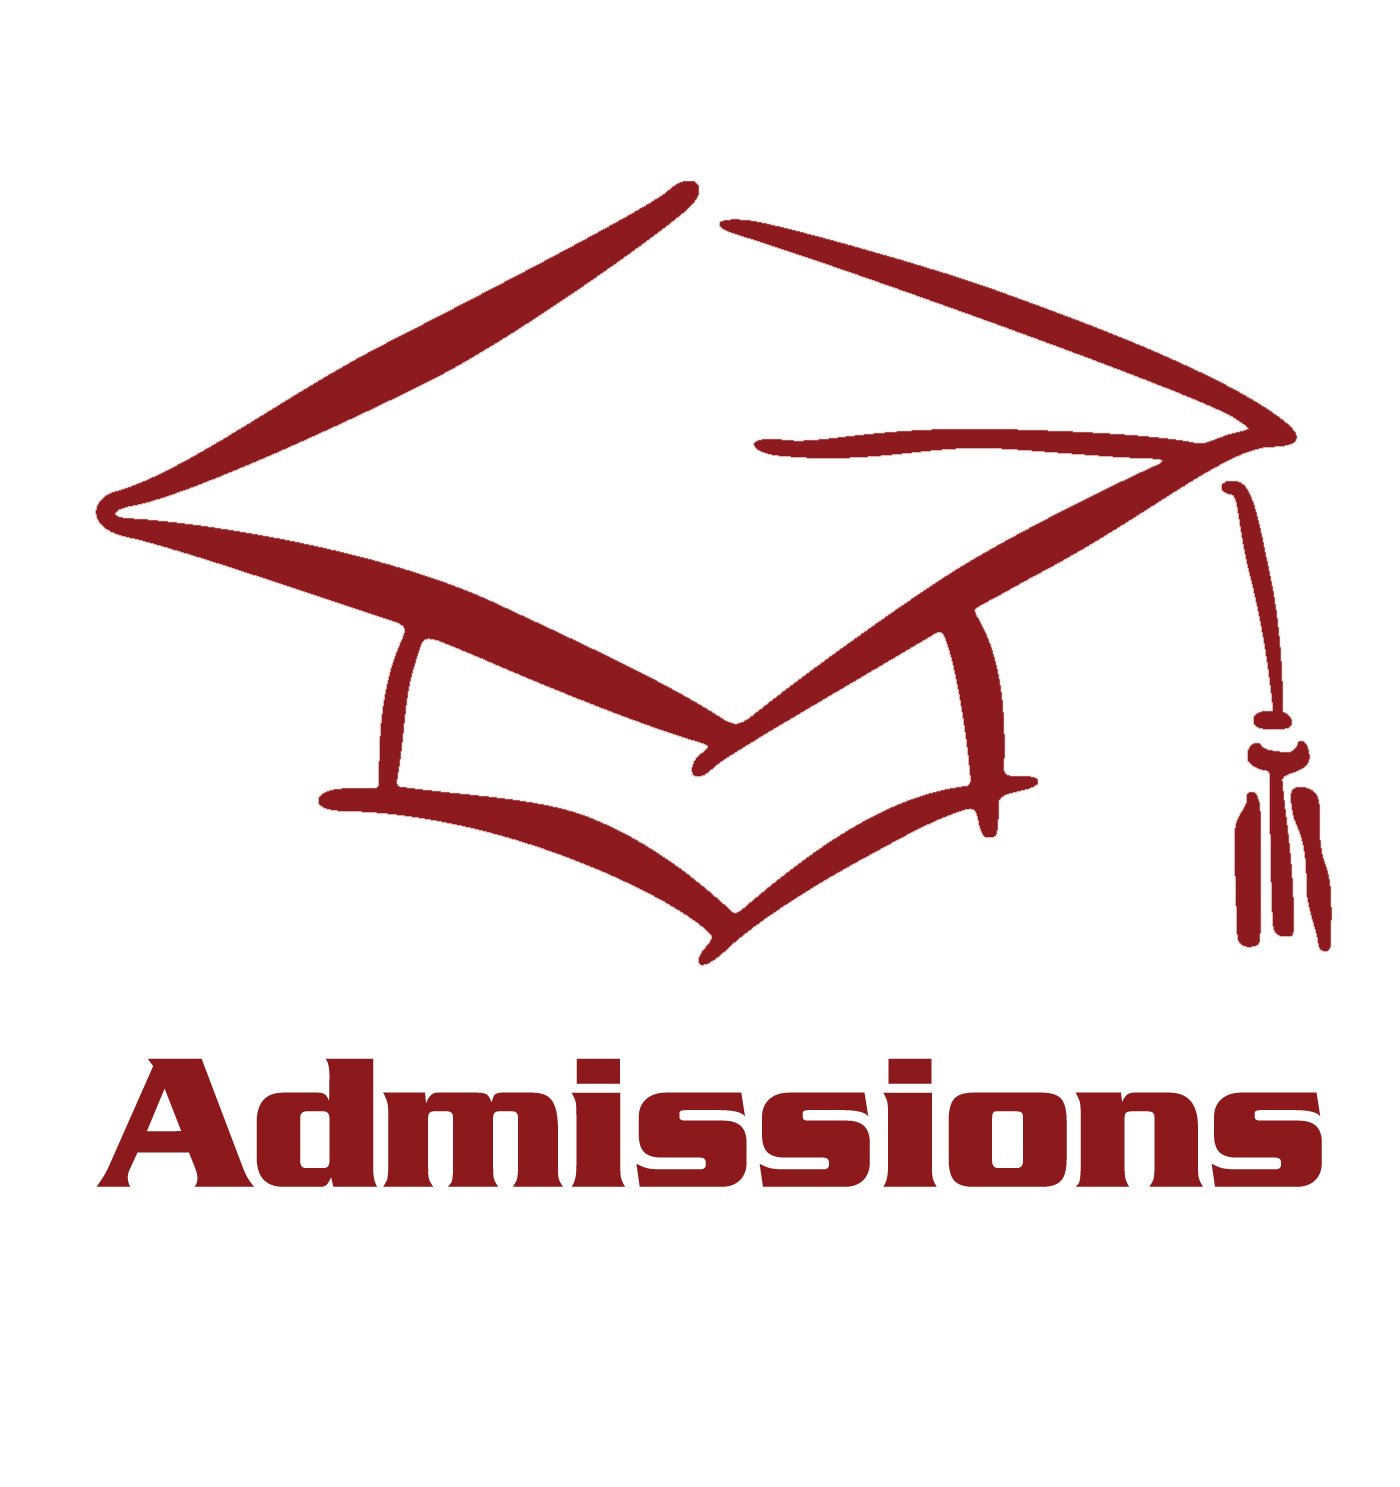 ADMISSION : राज्य के डिग्री इंजीनियरिंग पाठ्यक्रम के प्रवेश कार्यक्रम में हुआ बदलाव